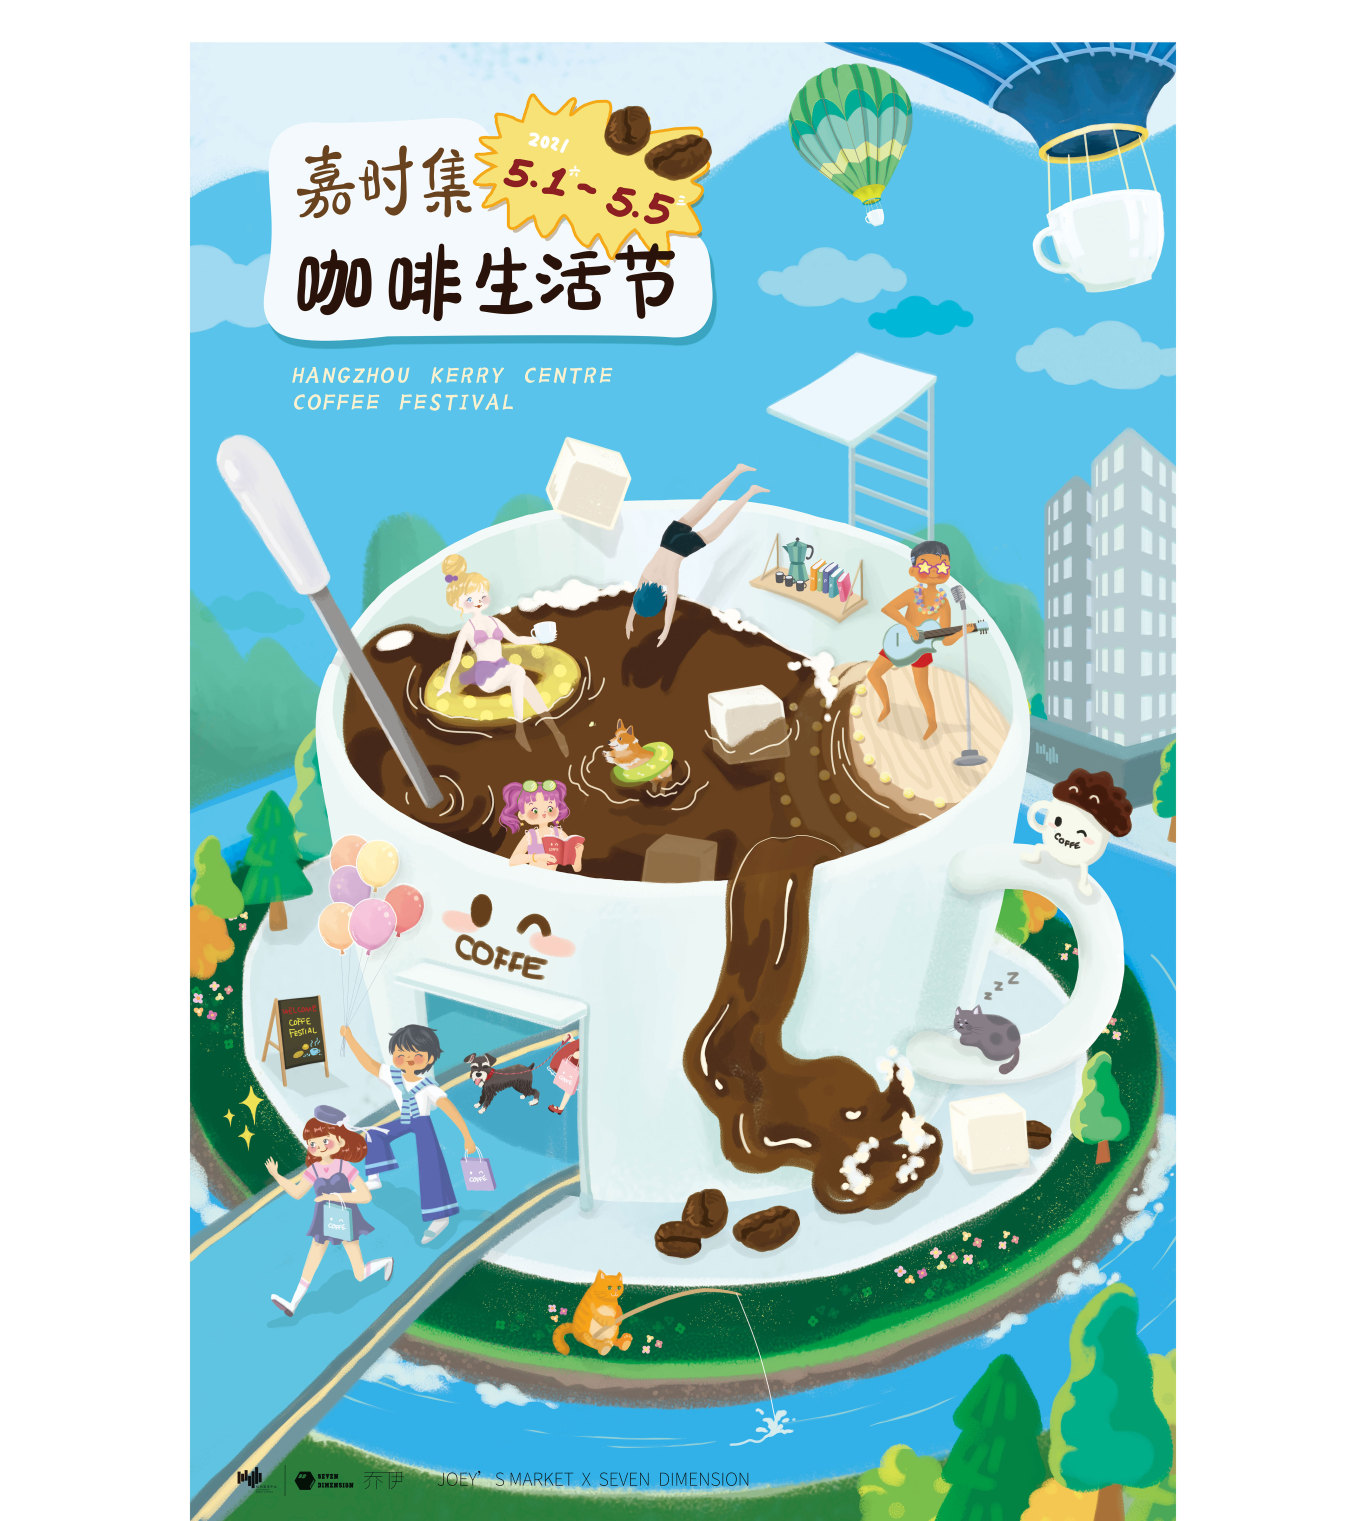 杭州嘉里中心咖啡生活节插画方案图0